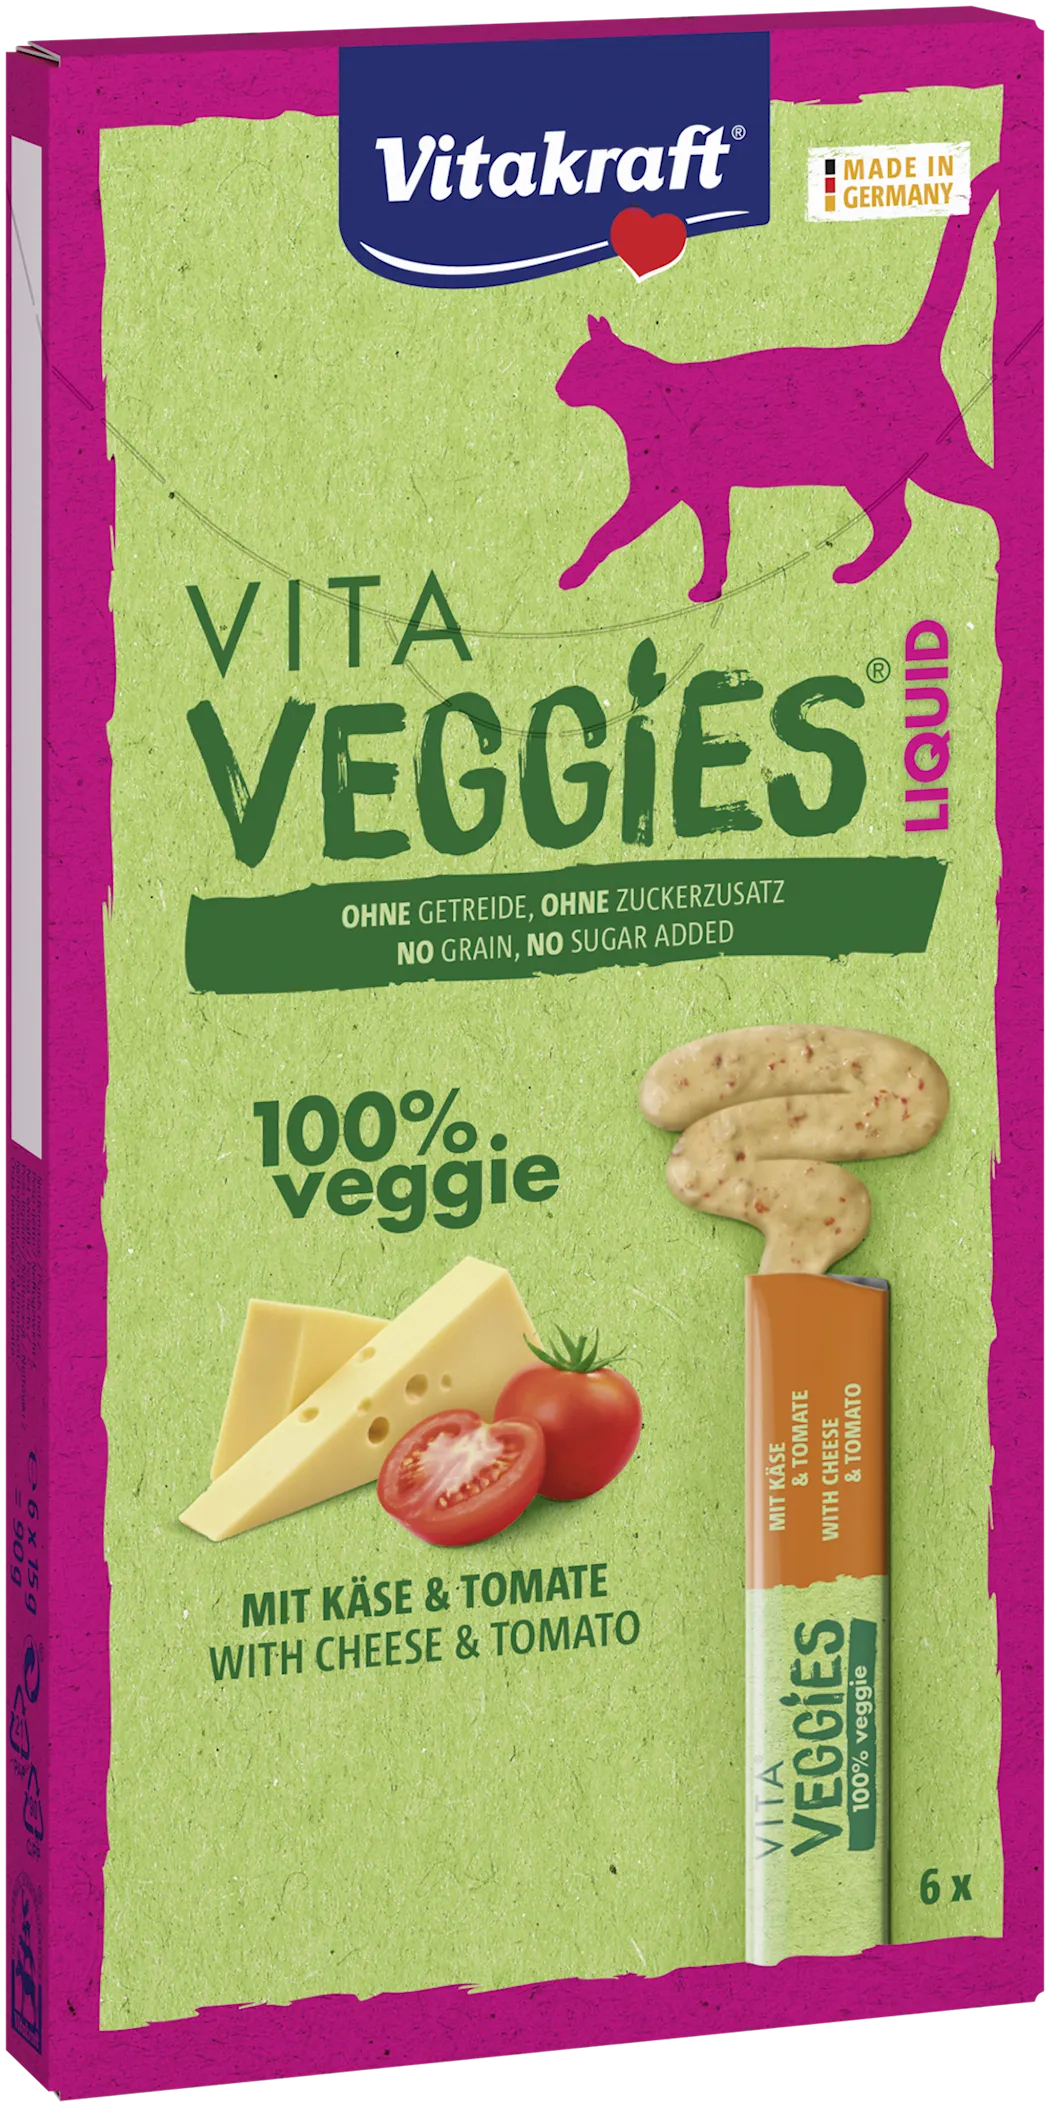 Vitakraft Vita Veggies katt flytende ost og tomat 6x15g